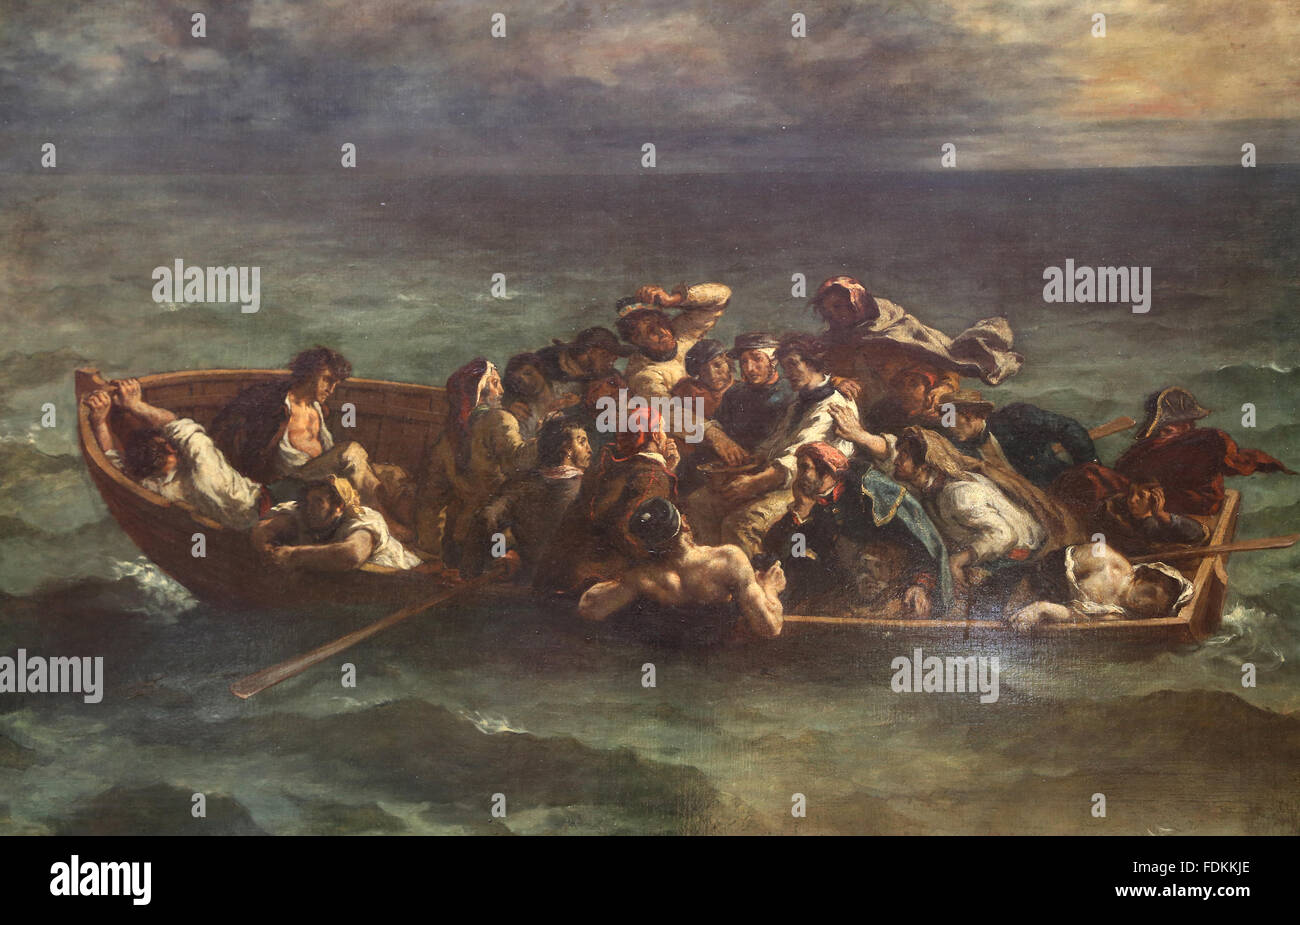 Shipwreck of Don Juan by Eugene Delacroix (1798-1863)m, 1840. Louvre Museum. Paris. France. Stock Photo